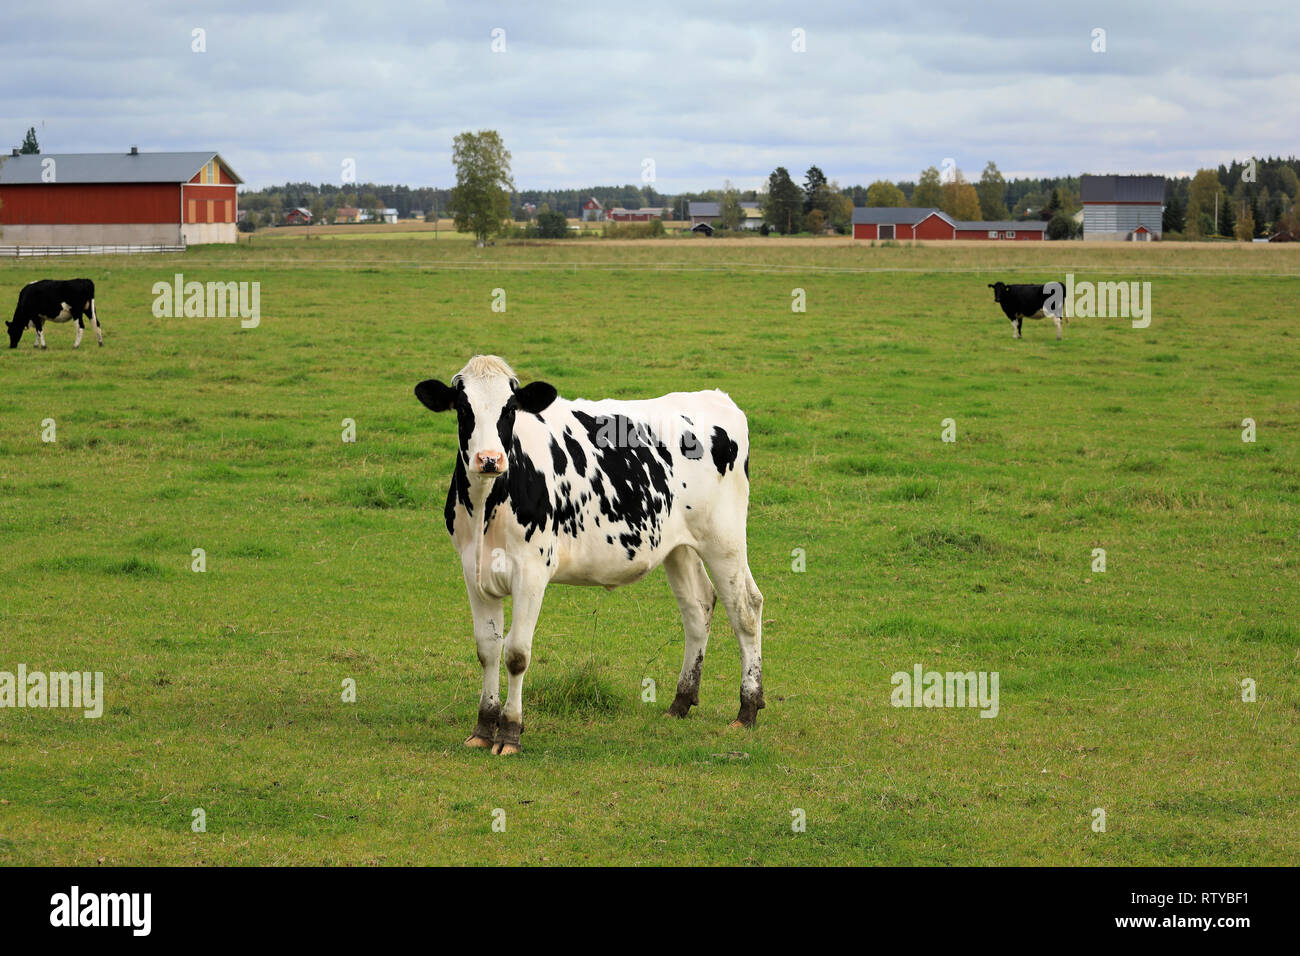 Juventud curiosa vaca Holstein-Friesian de pie en el verde césped del campo de ganado en un día de verano. Foto de stock